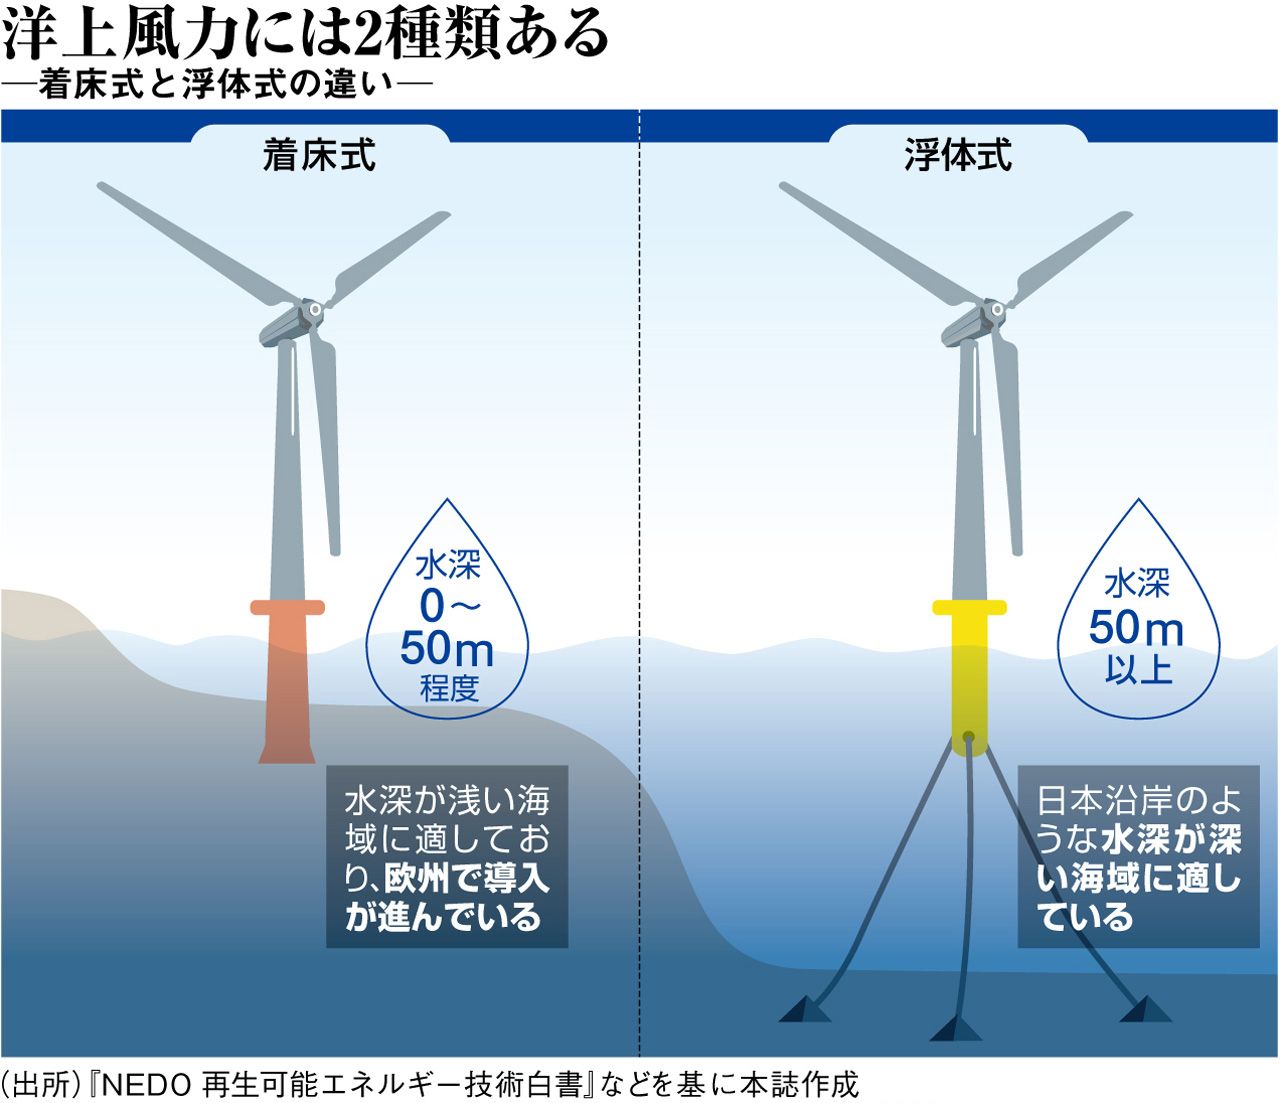 洋上 の 風力 最大 所 世界 発電